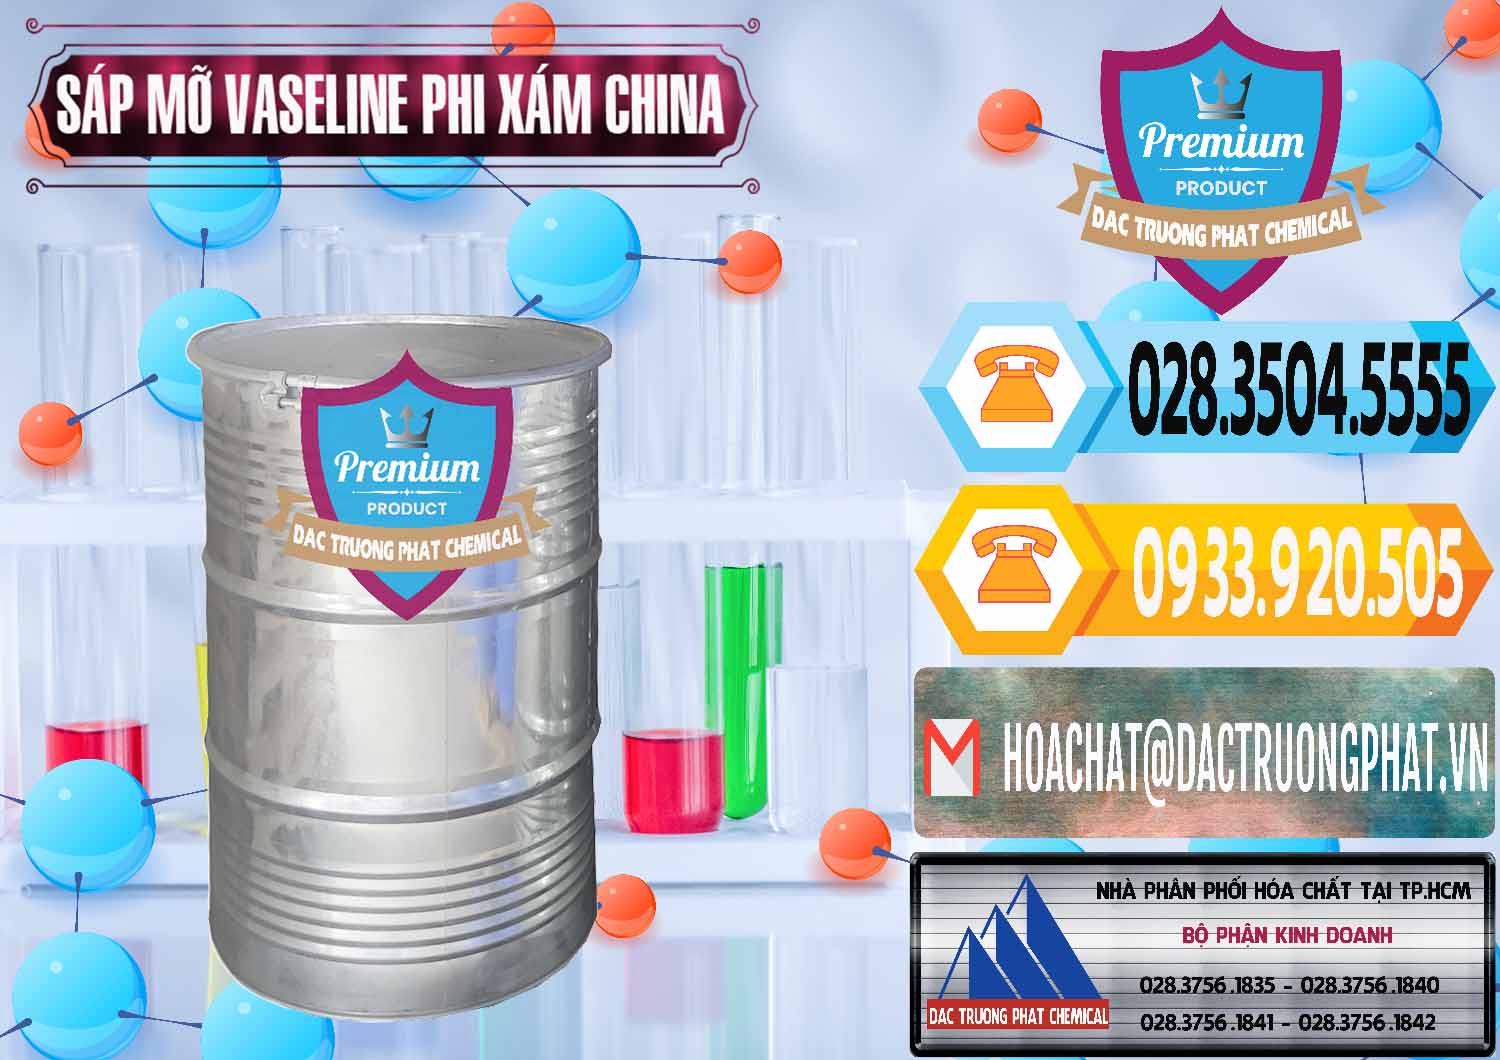 Đơn vị chuyên bán _ cung cấp Sáp Mỡ Vaseline Phi Xám Trung Quốc China - 0291 - Chuyên cung cấp _ phân phối hóa chất tại TP.HCM - hoachattayrua.net